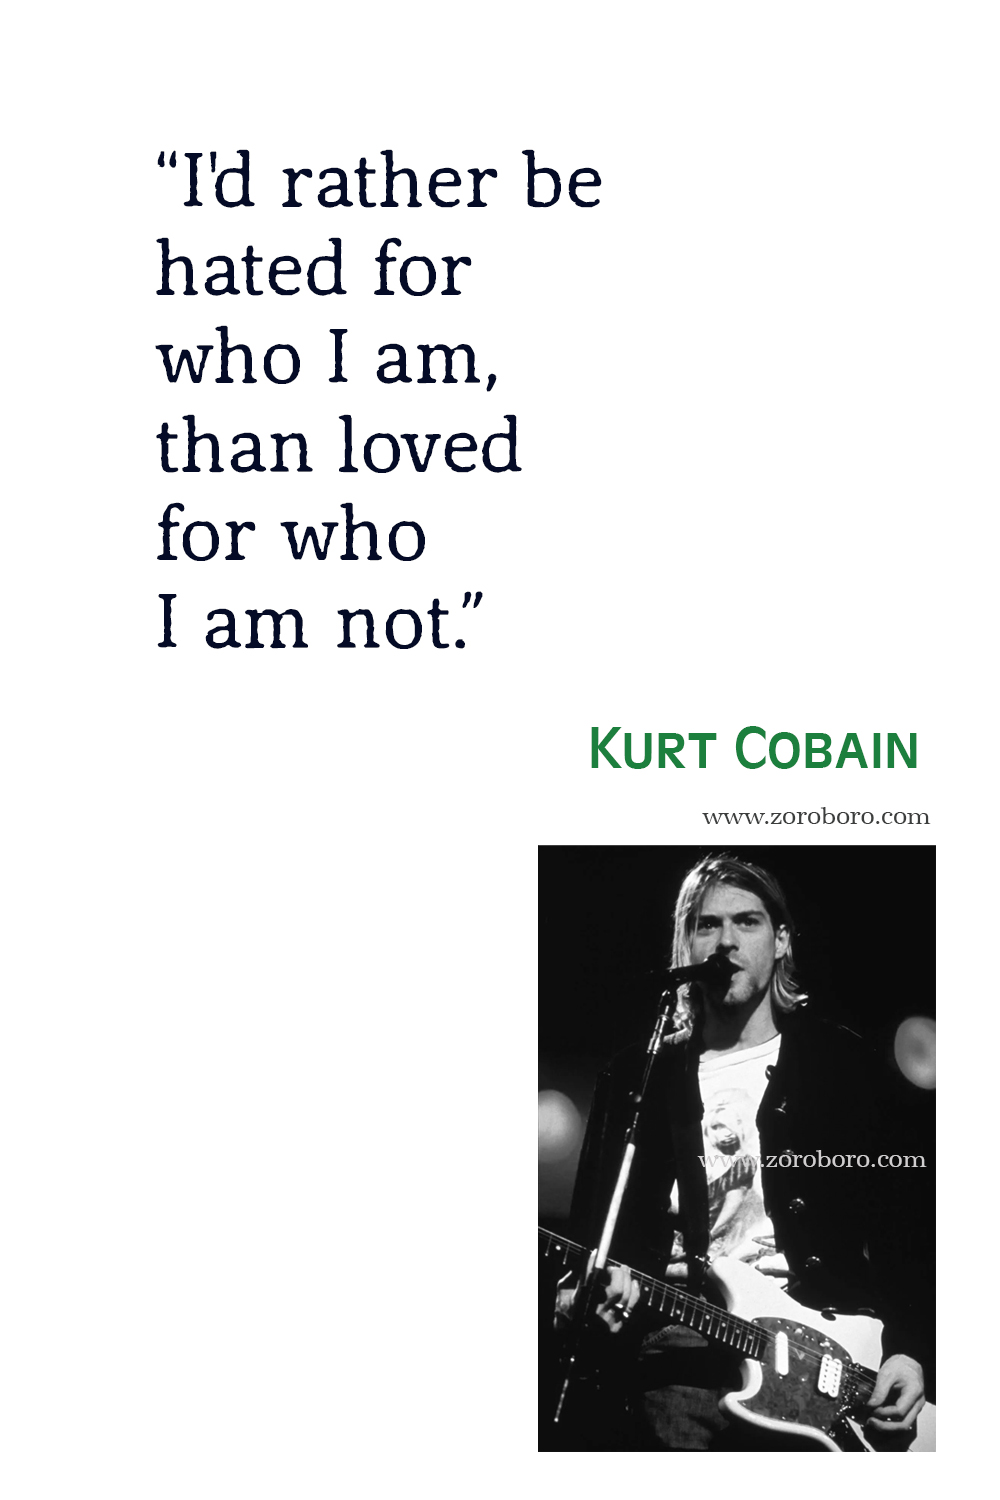 Kurt Cobain Quotes, Kurt Cobain Life Quotes, Kurt Cobain Love Quotes, Kurt Cobain Death Quotes, Kurt Cobain Fame Quotes, Kurt Cobain Quotes.